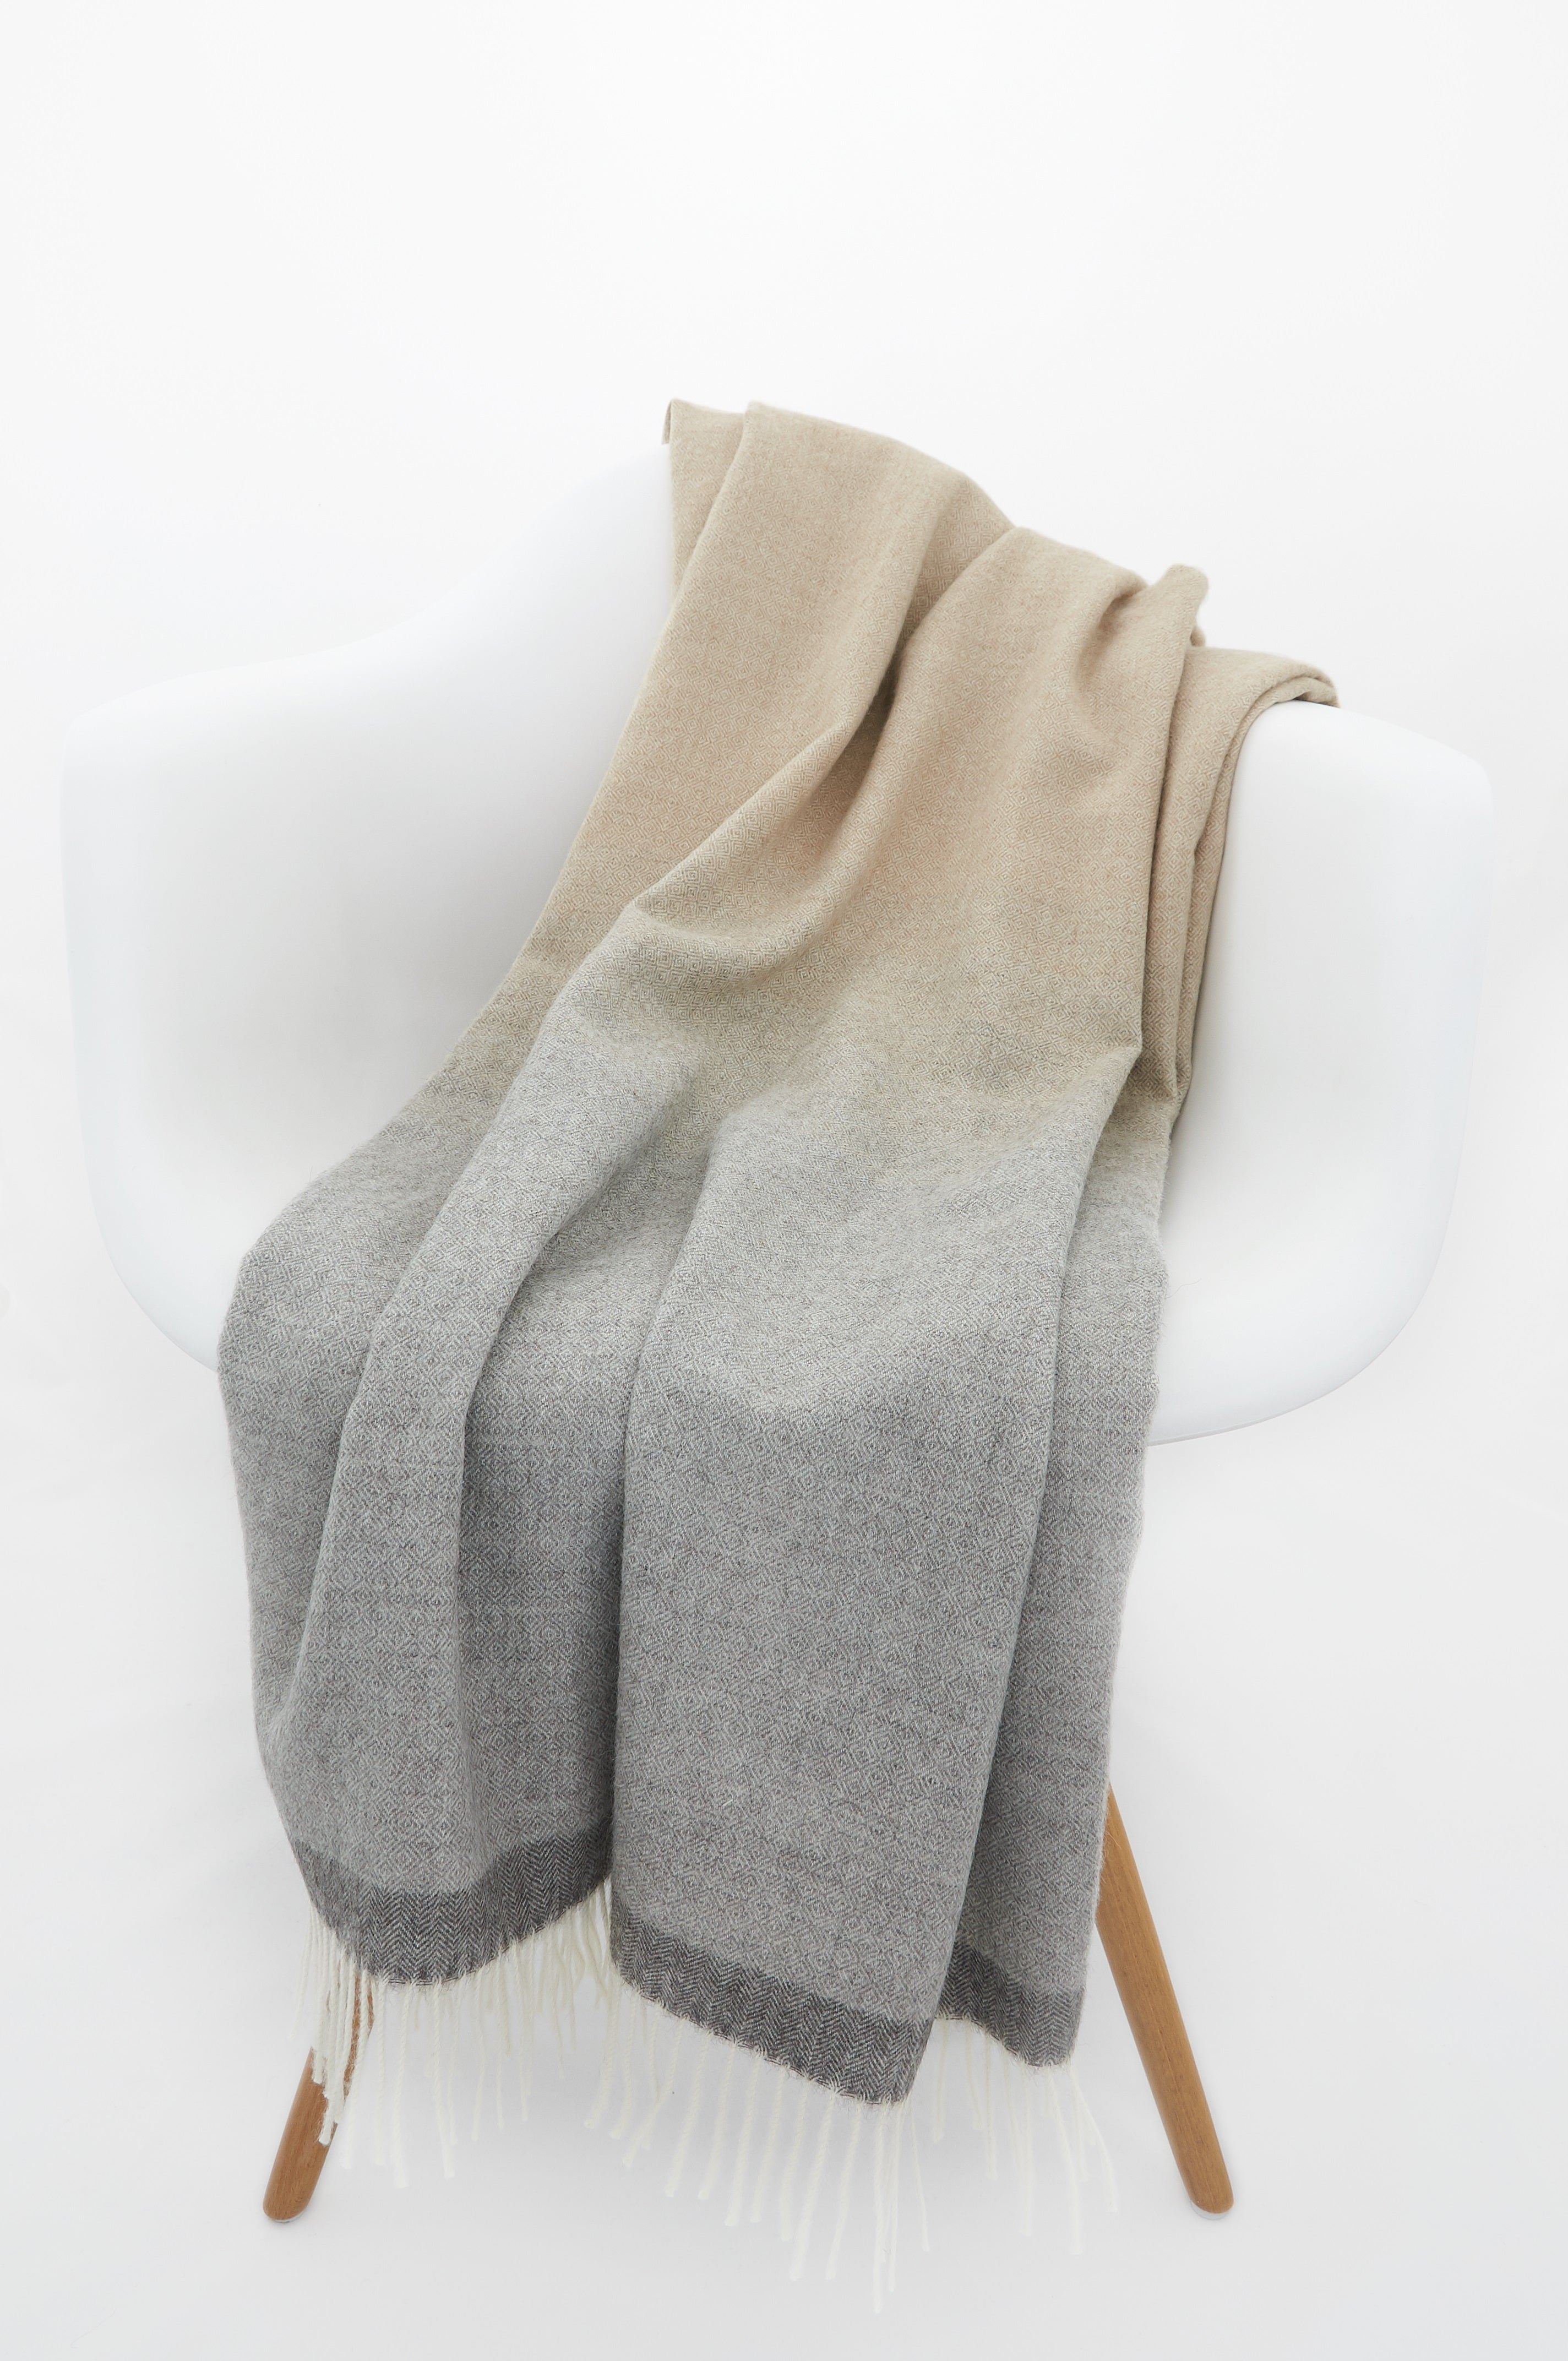 Alpaca Blanket - Ombre (Tan/Grey)